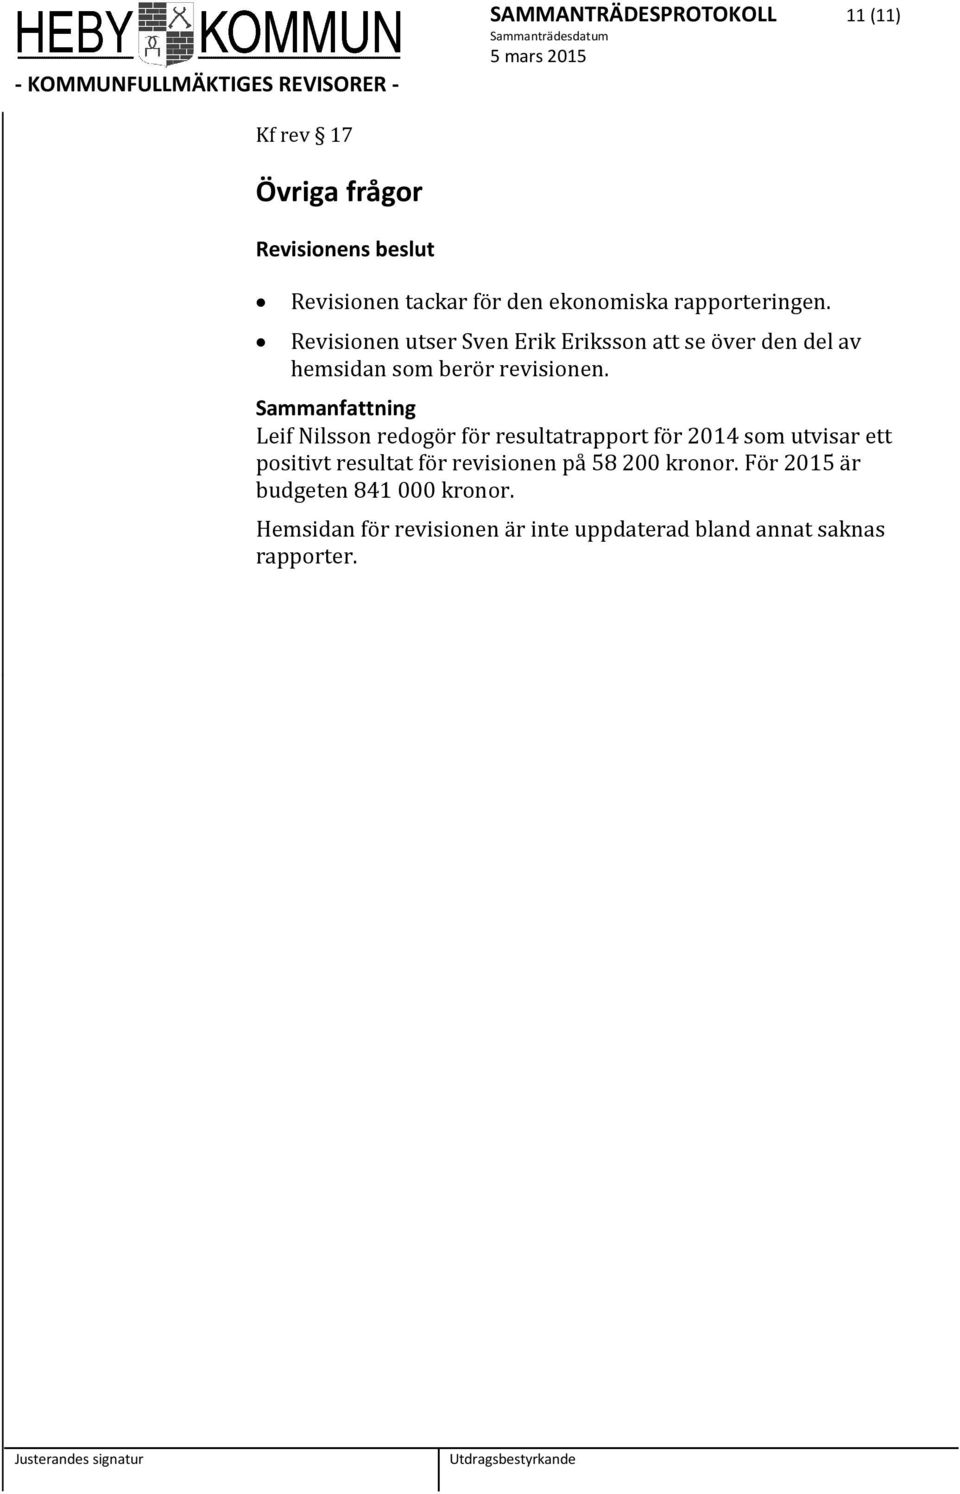 Leif Nilsson redogör för resultatrapport för 2014 som utvisar ett positivt resultat för revisionen på 58